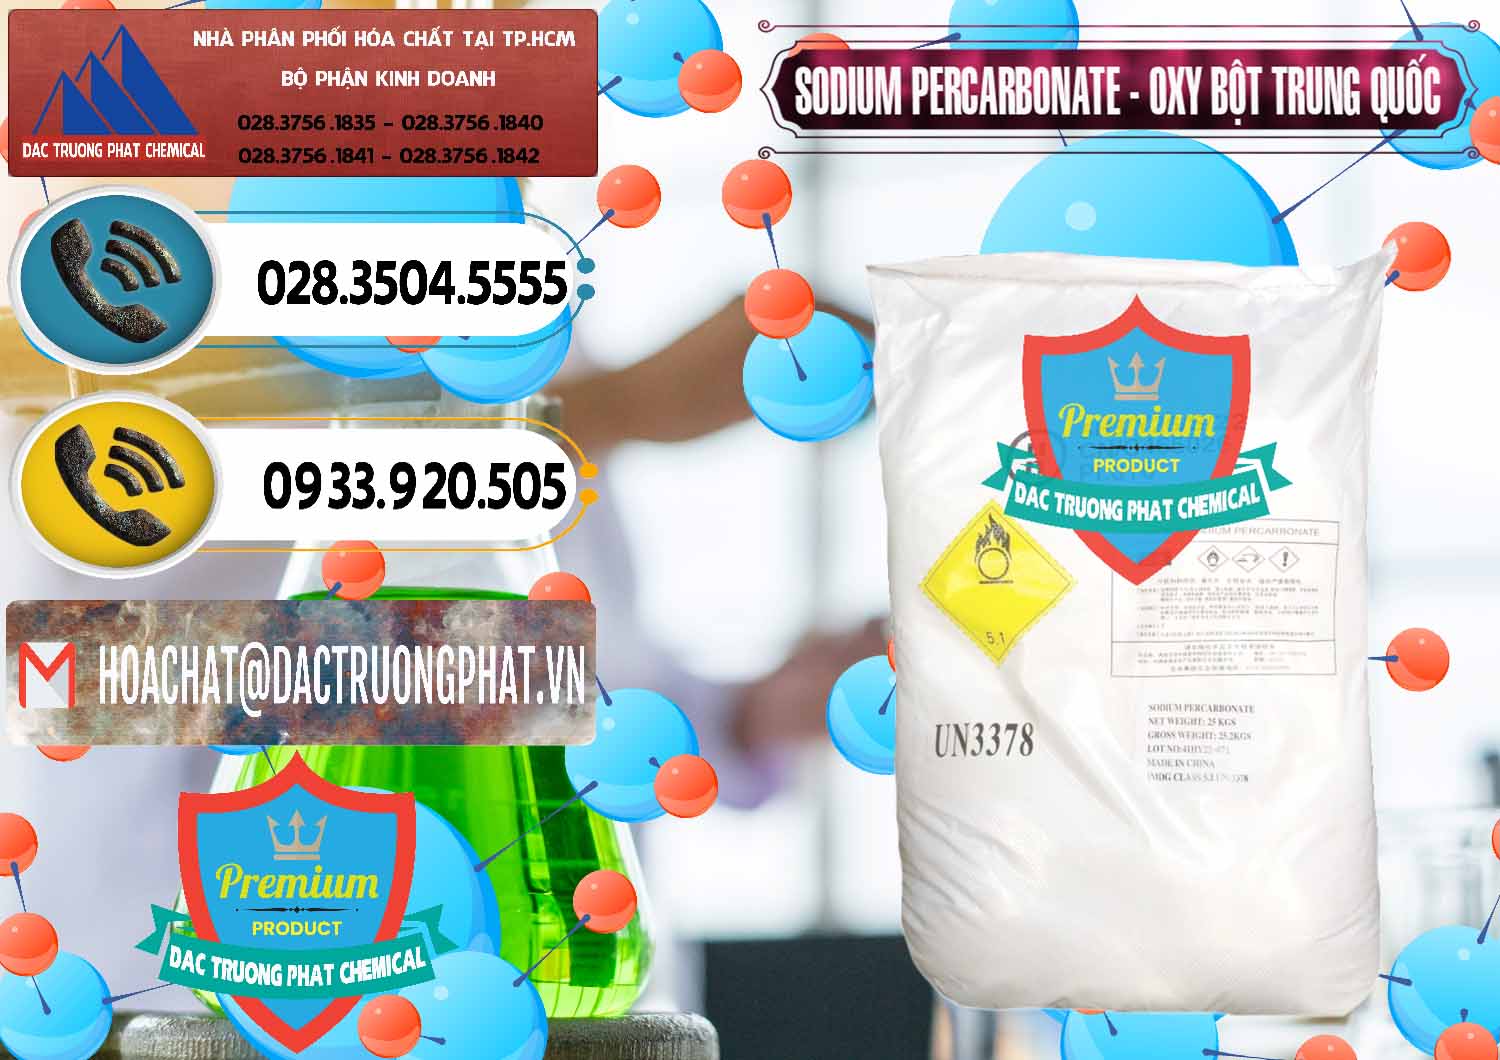 Phân phối _ bán Sodium Percarbonate Dạng Bột Trung Quốc China - 0390 - Công ty phân phối - bán hóa chất tại TP.HCM - hoachatdetnhuom.vn